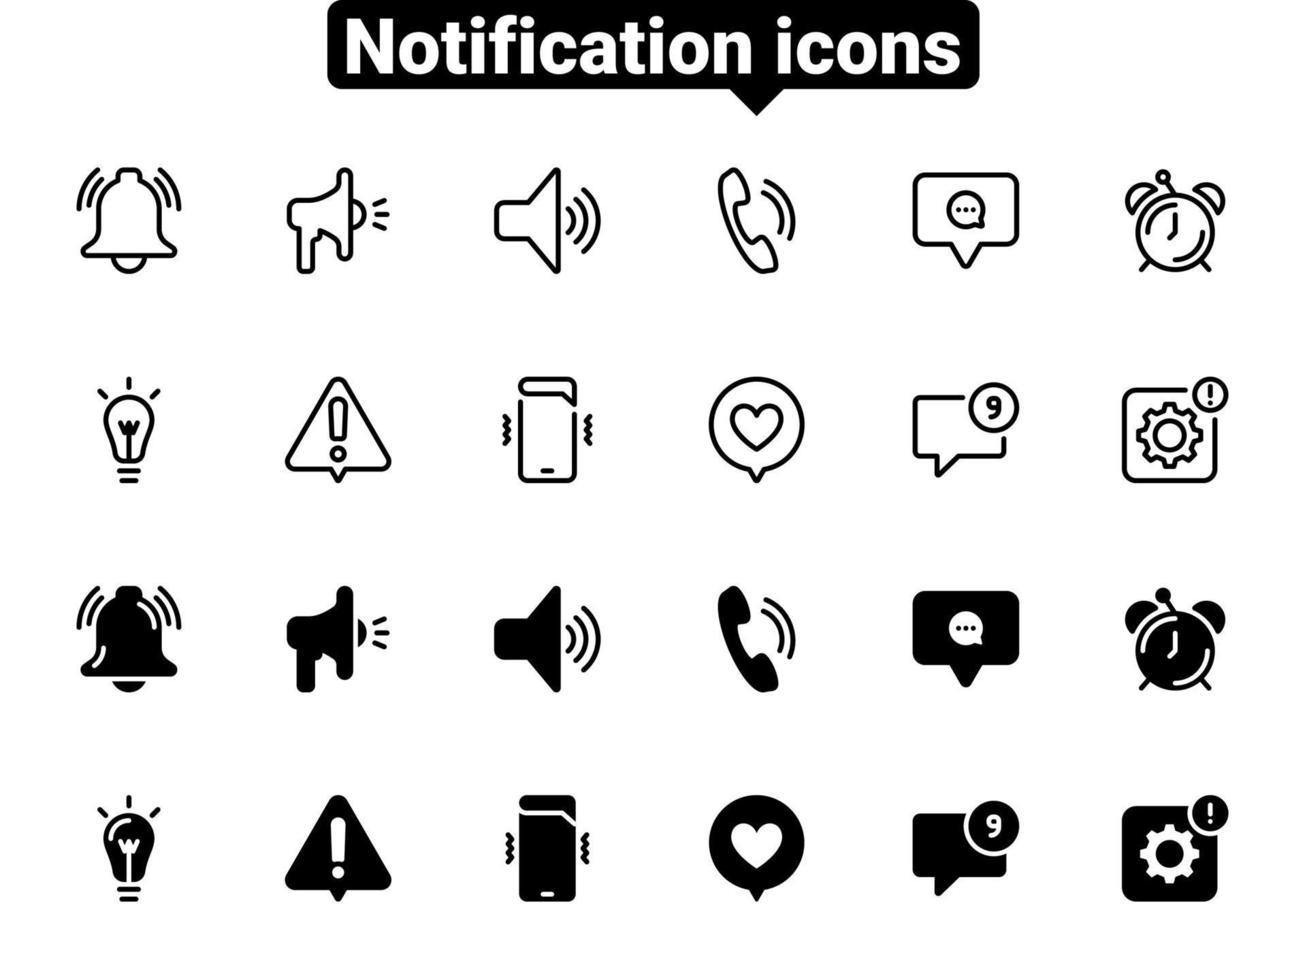 conjunto de iconos de vector negro, aislado sobre fondo blanco. ilustración plana en una notificación de tema